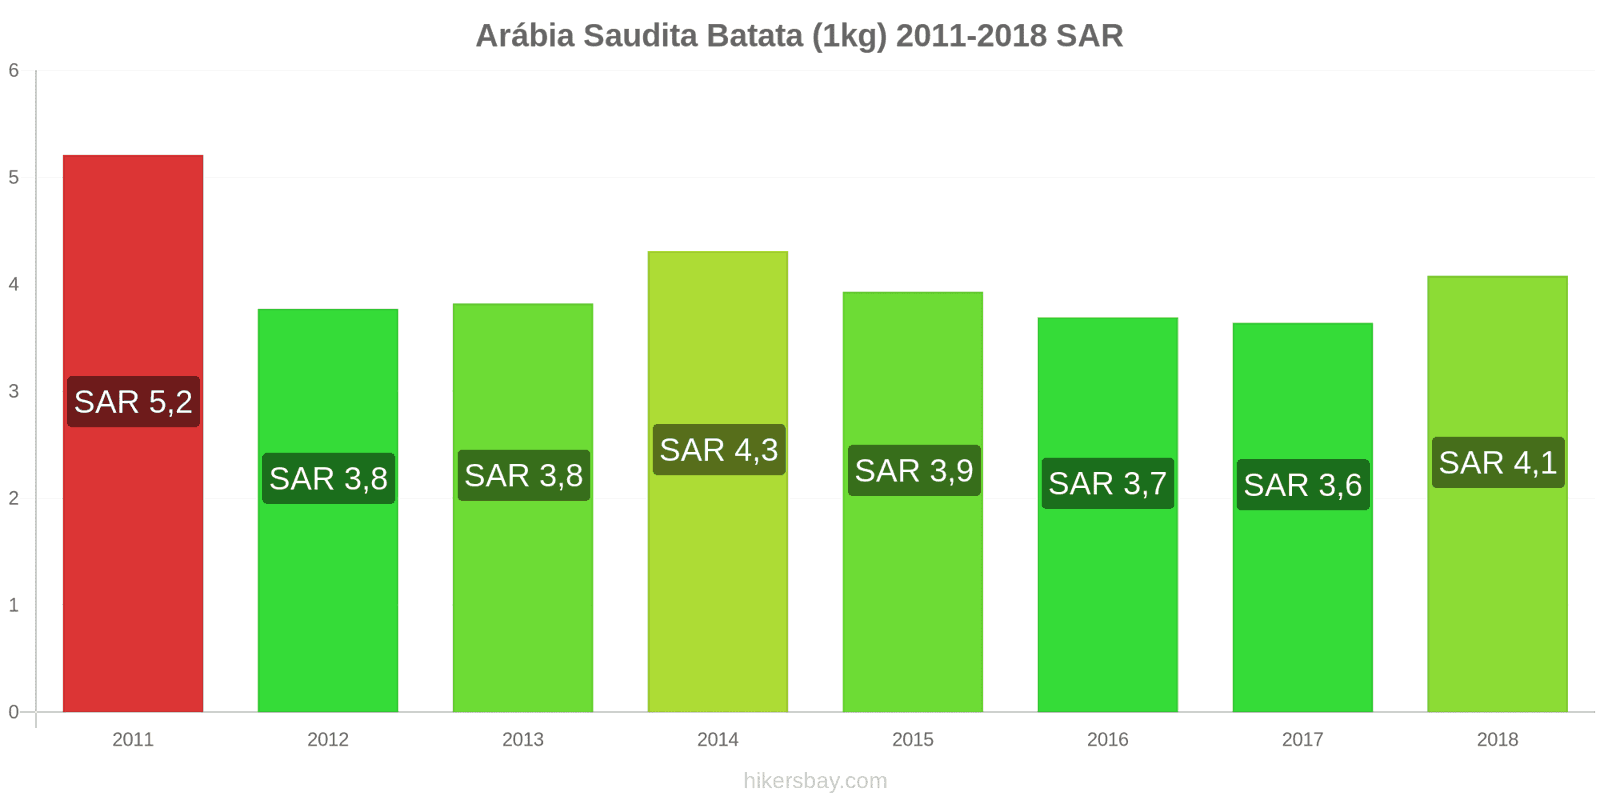 Arábia Saudita mudanças de preços Batatas (1kg) hikersbay.com